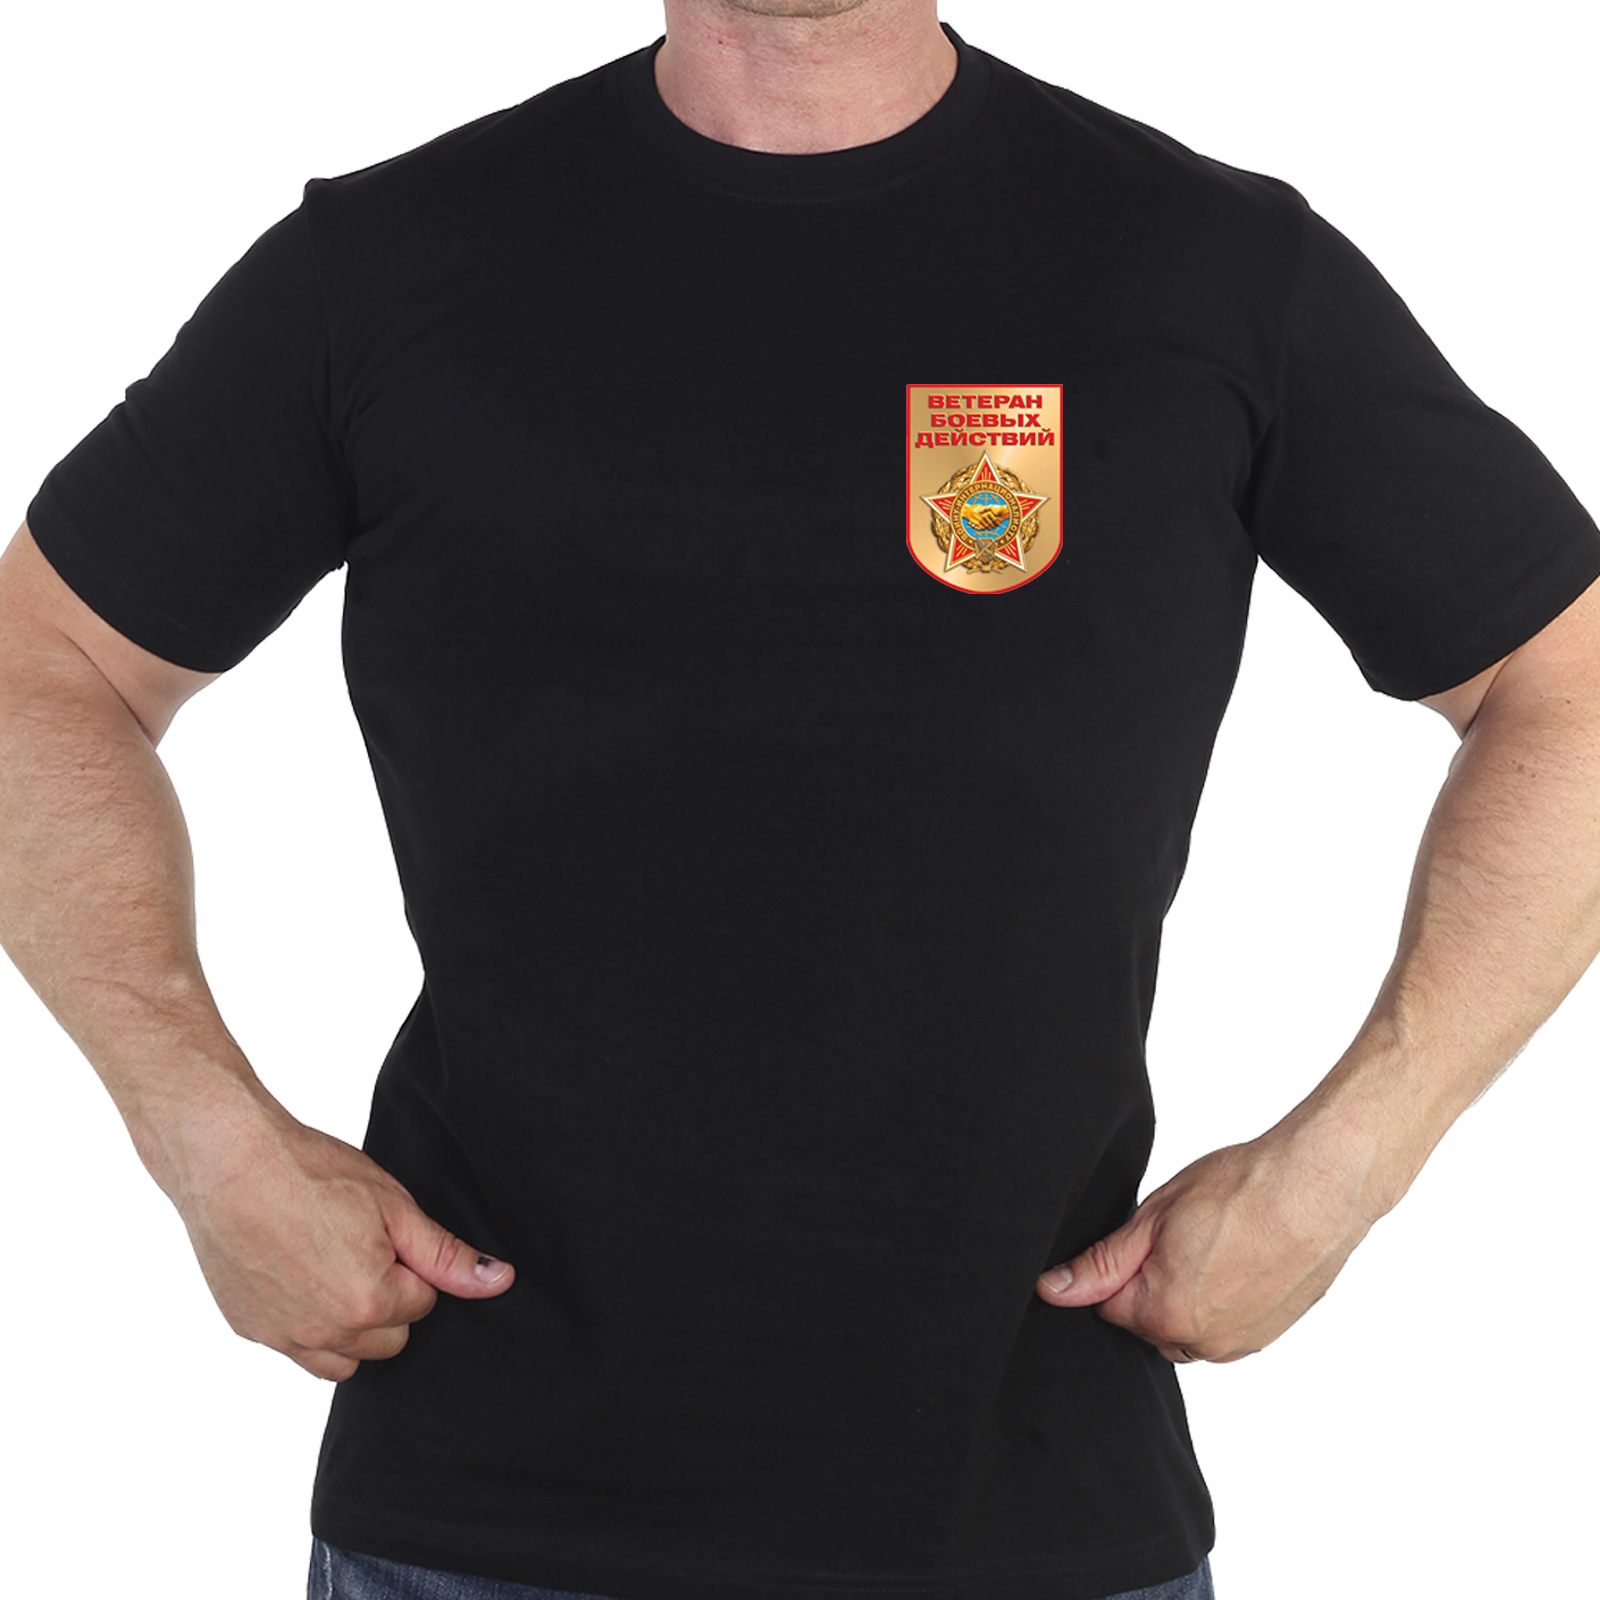 Чёрная футболка с термотрансфером "Ветеран боевых действий"